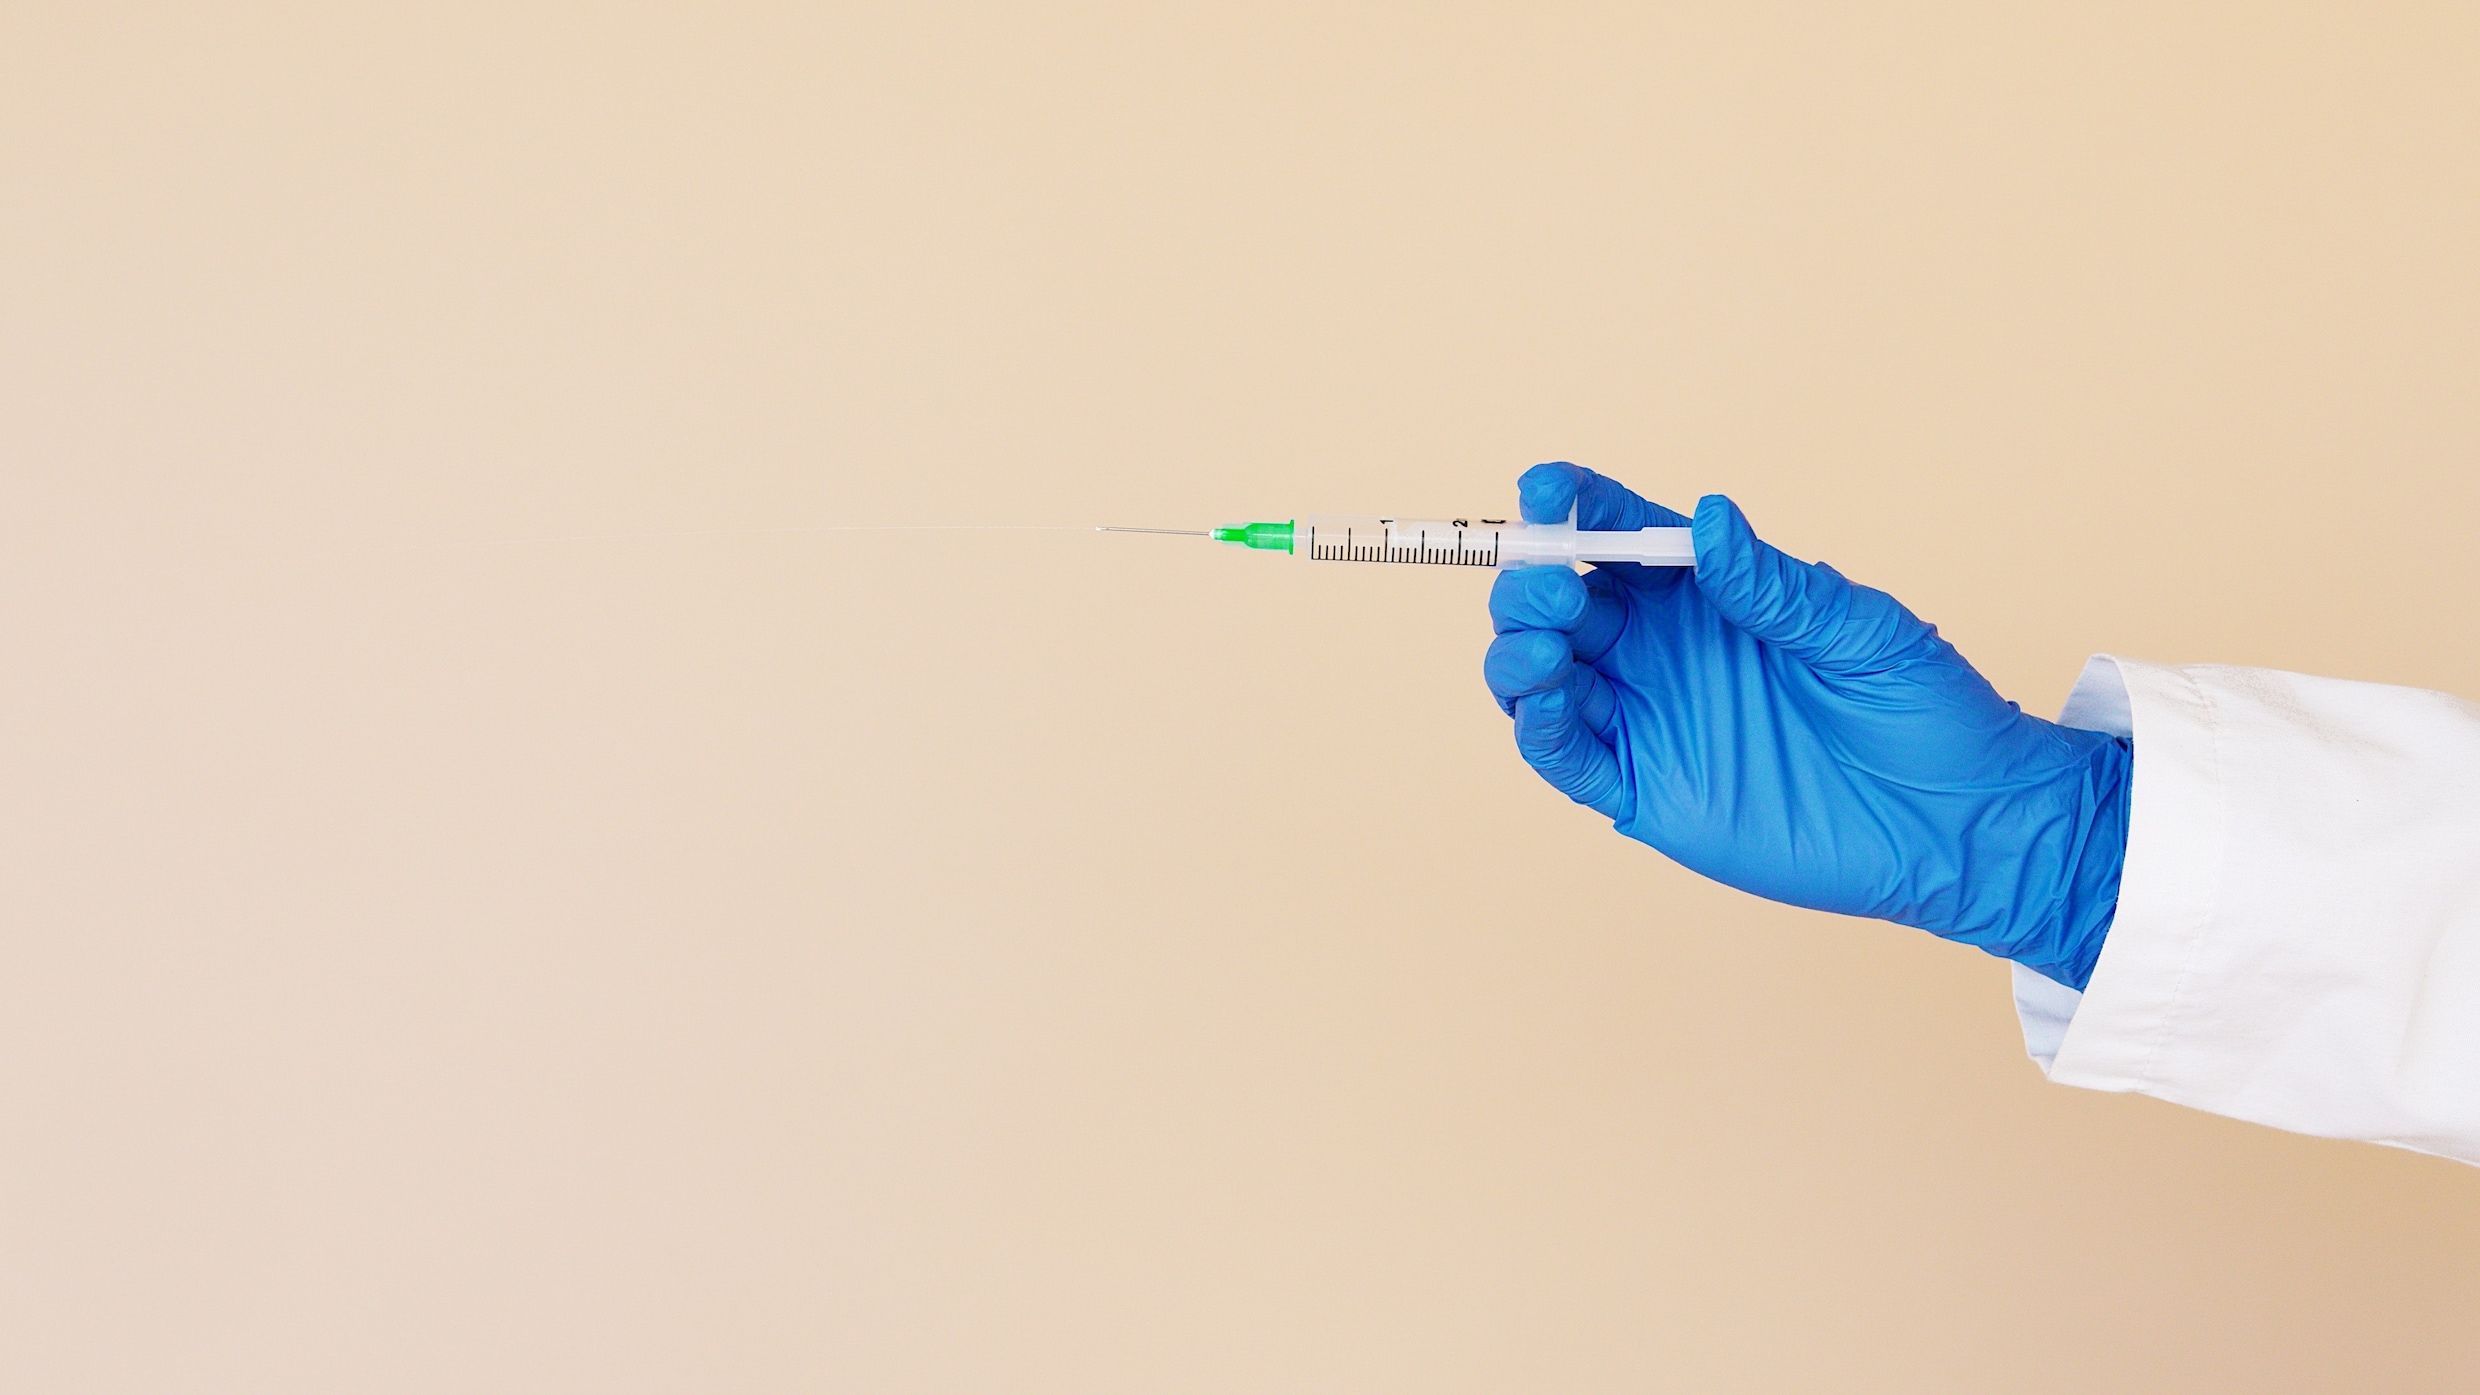 Lezersoproep: moet de overheid het vaccin verplichten?